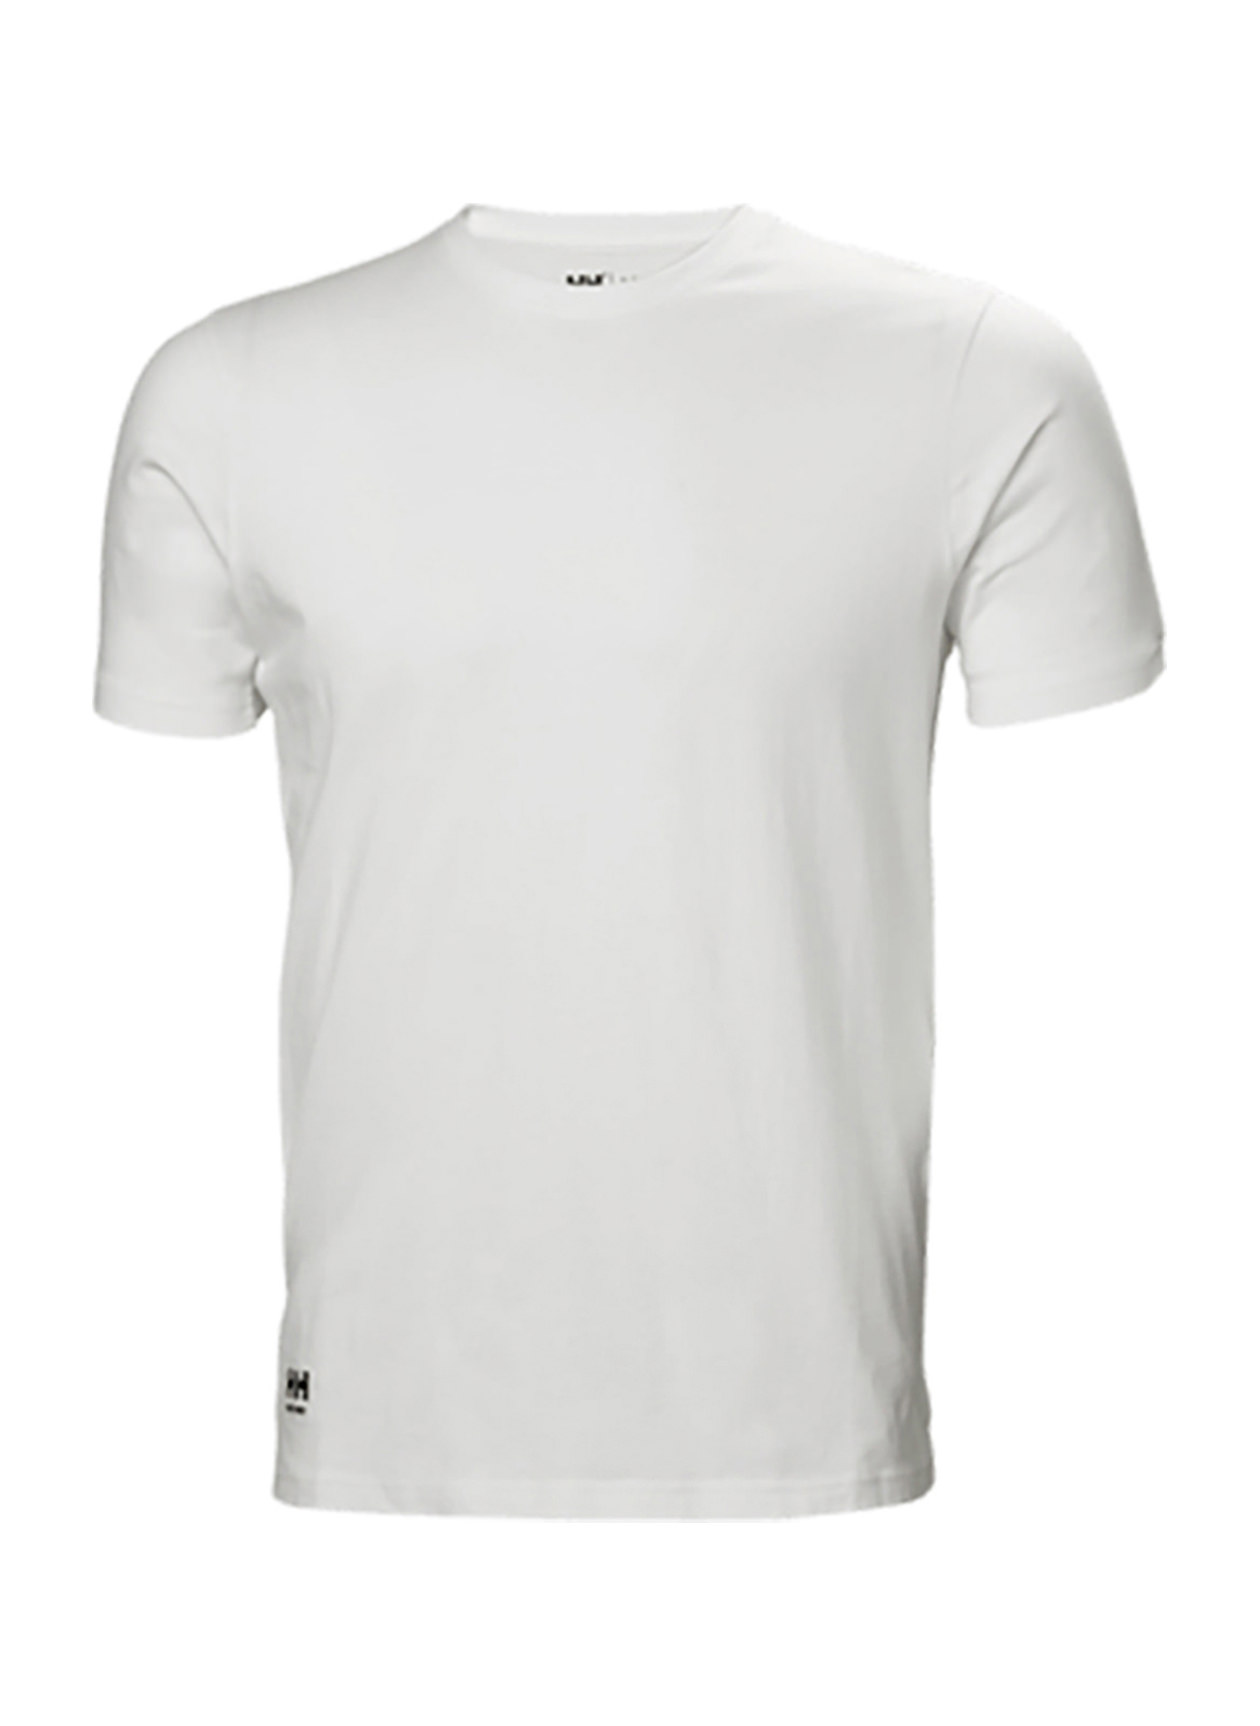 Helly Hansen Manchester T-Shirt Men's White Helly Hansen